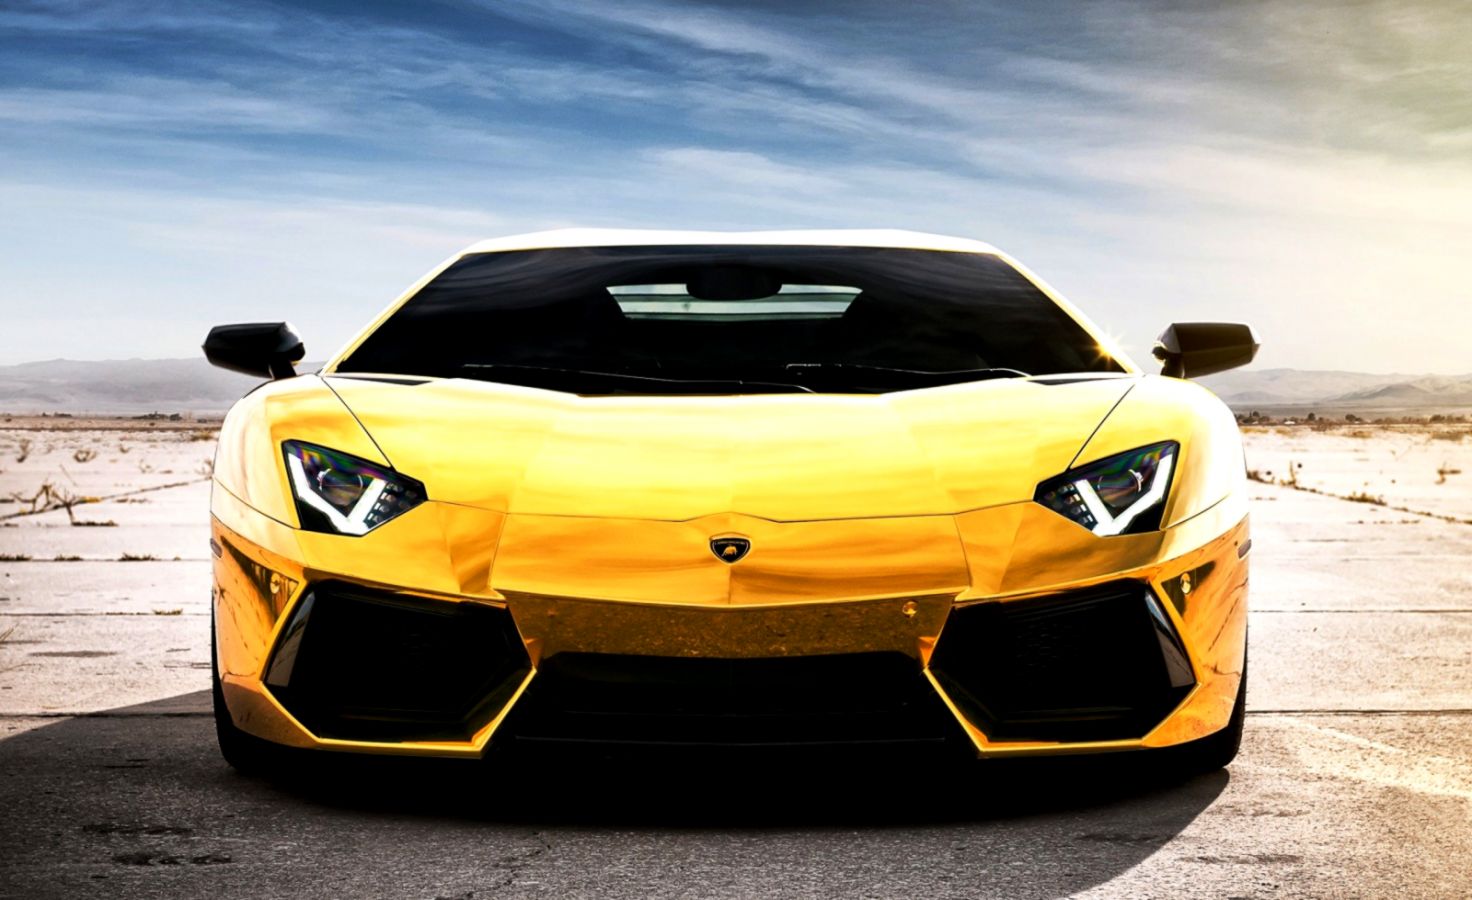 Free Download Sport Car Lamborghini Hd Wallpaper - Lamborghini Free Wallpaper Download - HD Wallpaper 